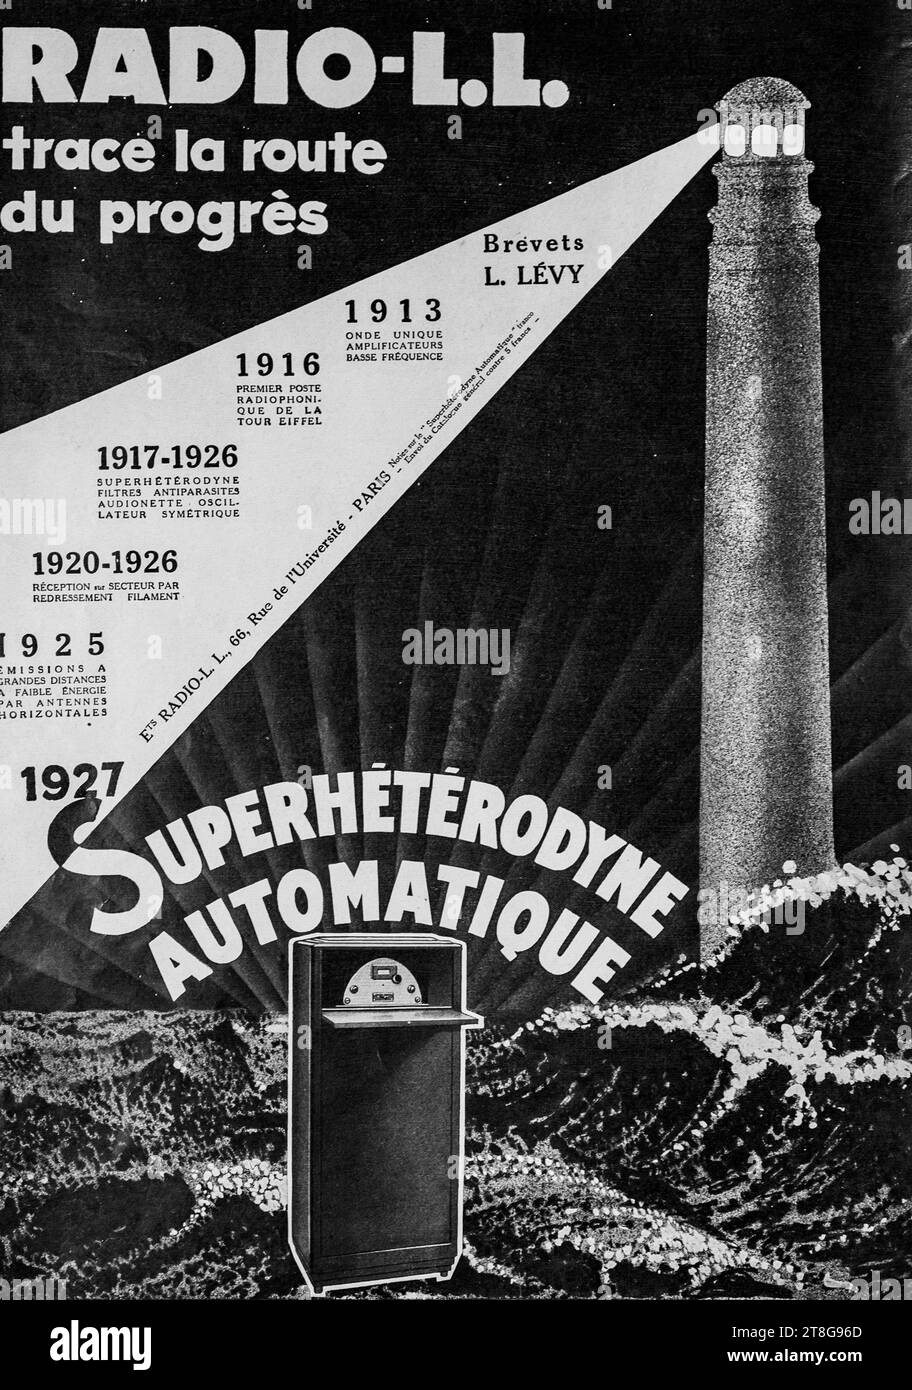 Affiche publicitaire radio vintage des années 1920 présentant des jalons historiques réalisés en France par les progrès de la technologie radio. Banque D'Images